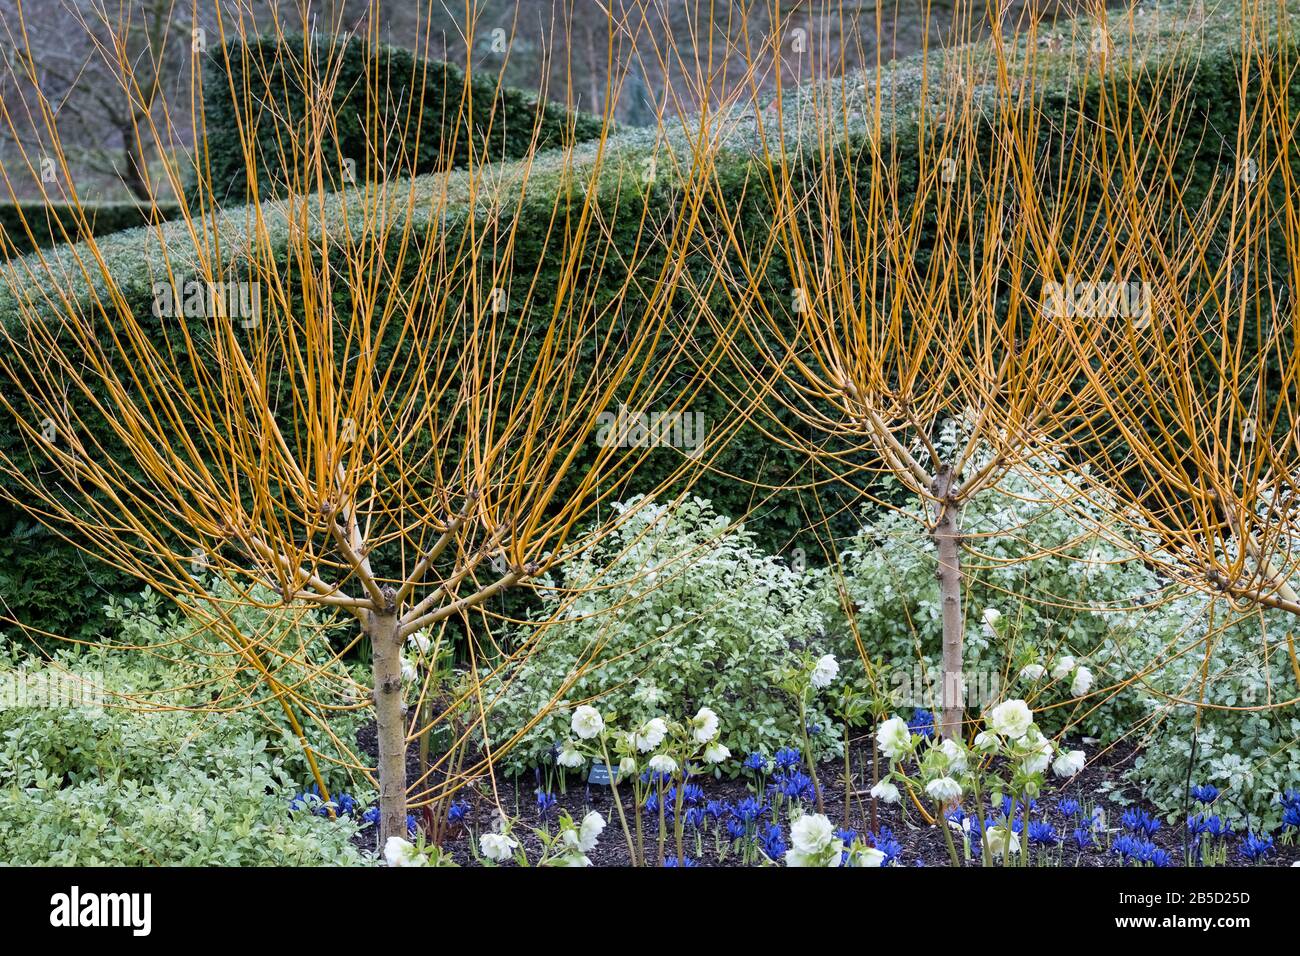 Exemple de couverture vergreen Yew fournissant structure et couleur dans un jardin d'hiver ou de printemps, mars, Yorkshire, Angleterre, Royaume-Uni Banque D'Images